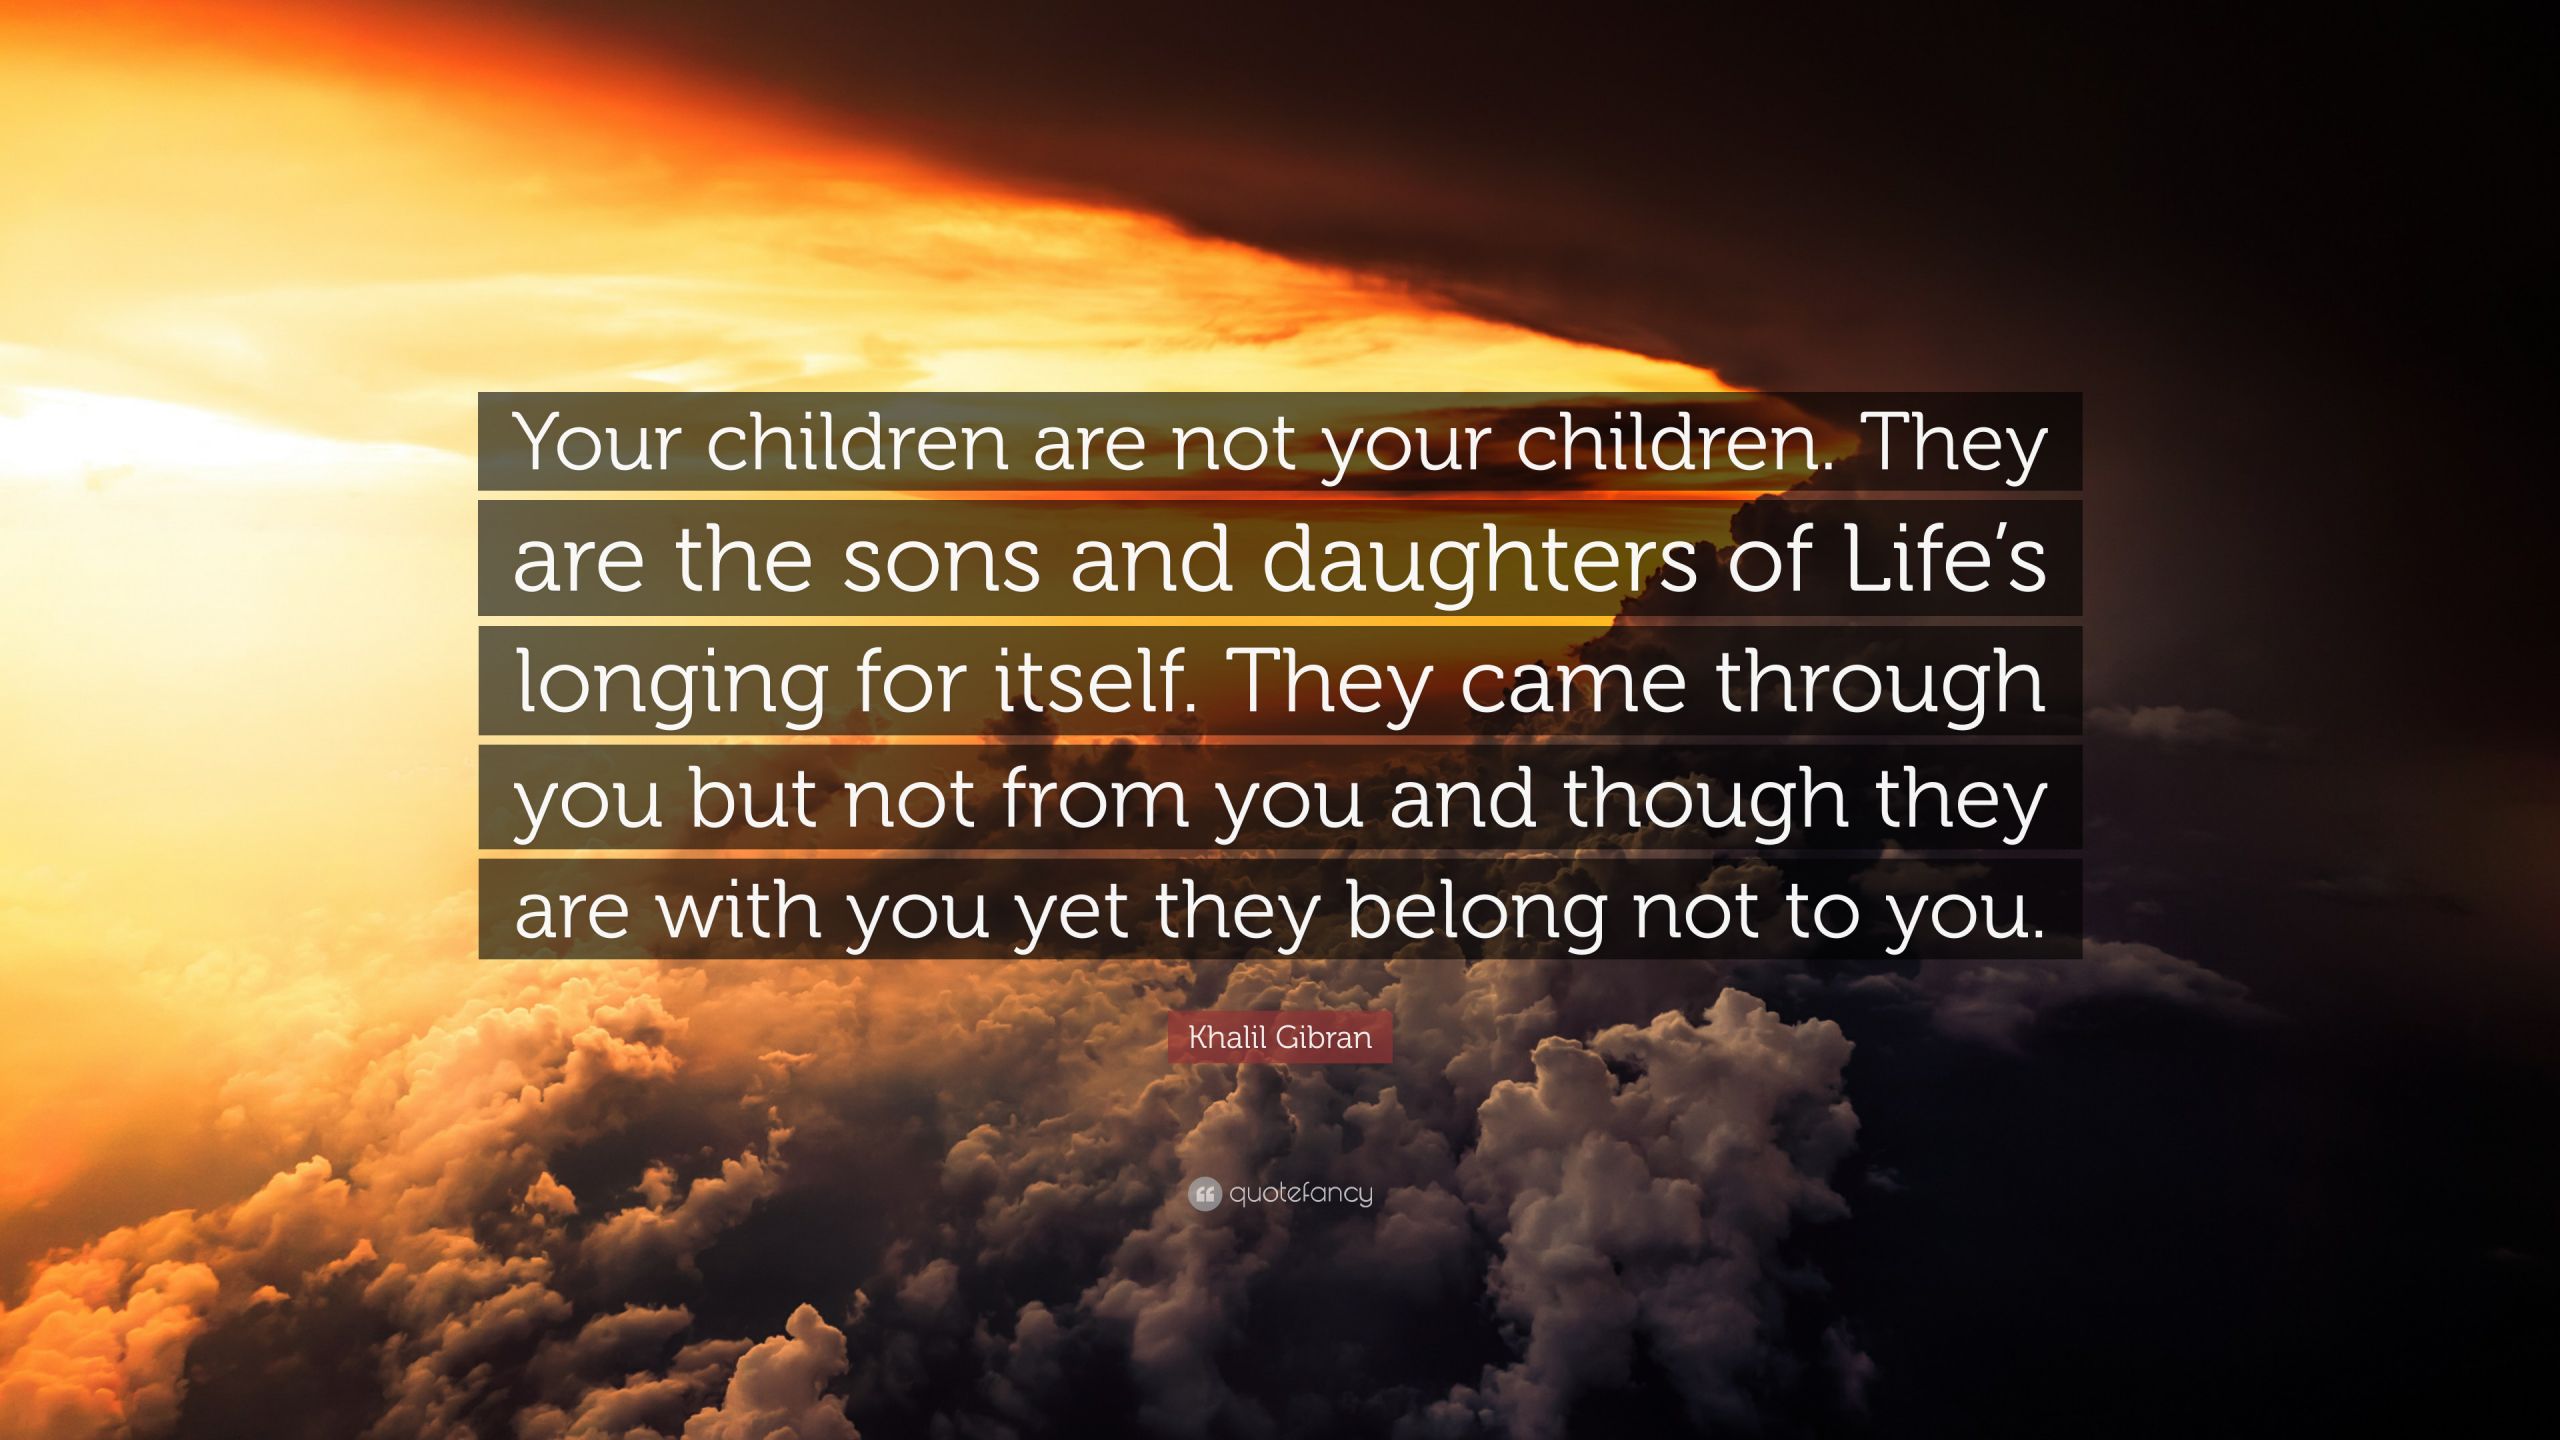 Khalil Gibran Quote On Children
 Khalil Gibran Quote “Your children are not your children